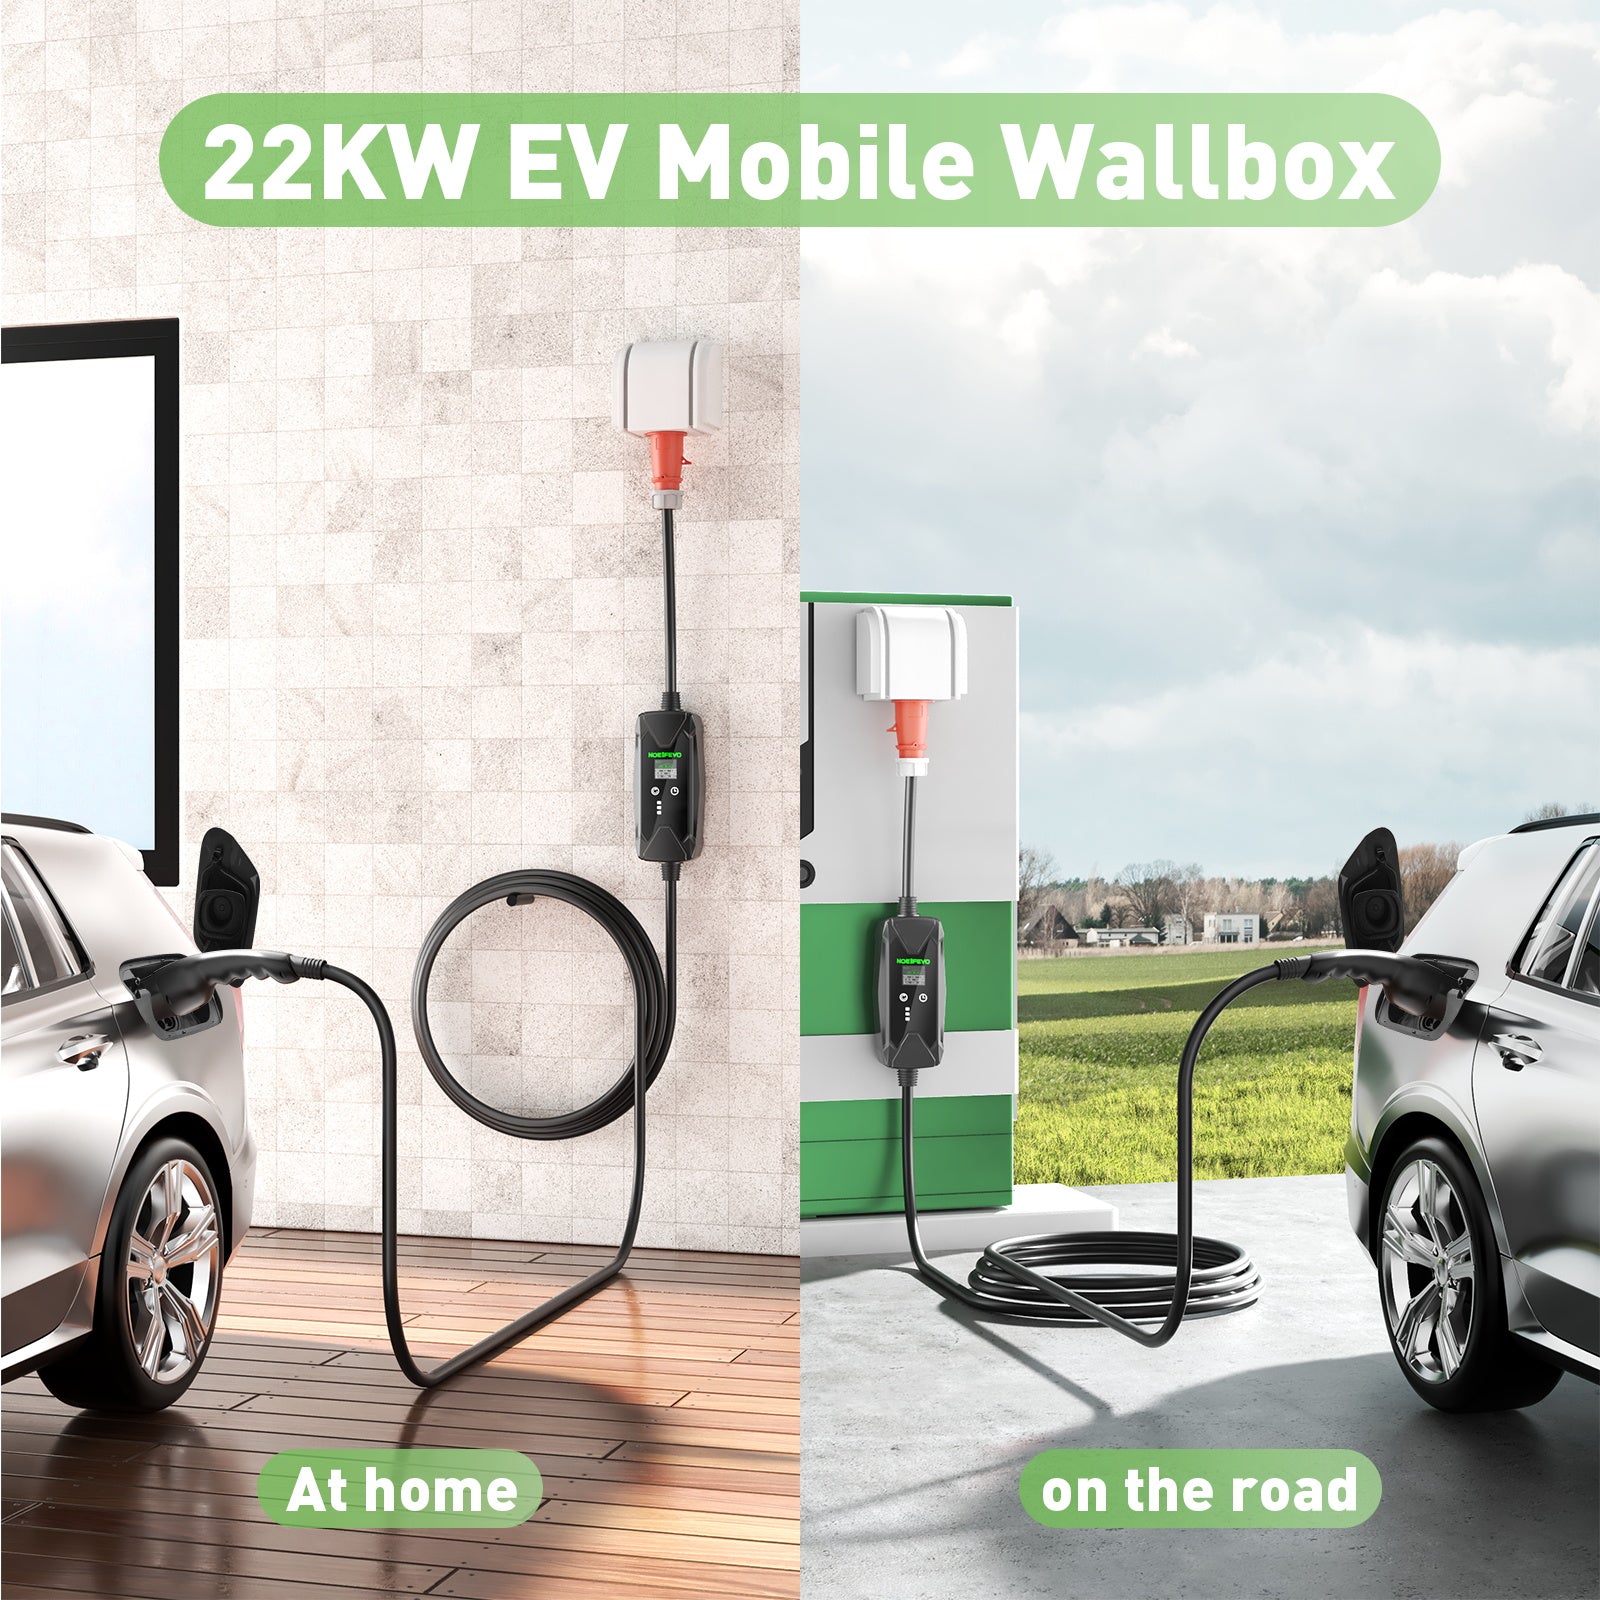 22KW 32A 3 Phase Mobile EV murale Boîte, Chargeur rapide de type 2 pou –  Smart LifePO4 Batterie & Heimspeicherung von Energie & Intelligentes  Ladegerät